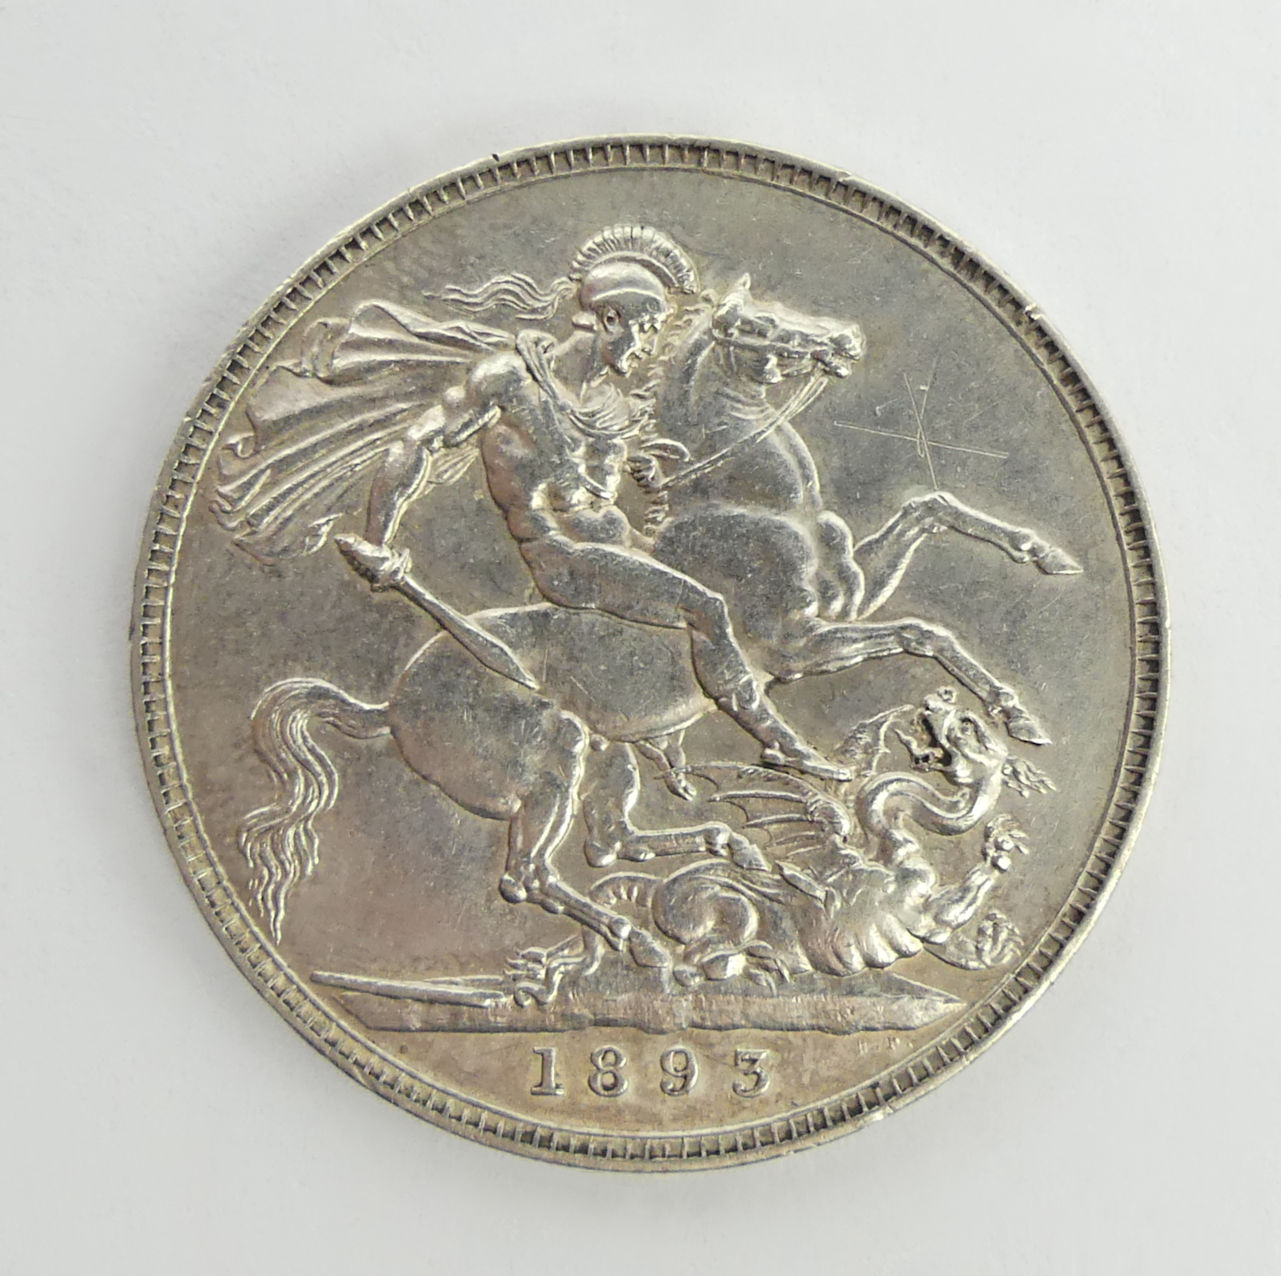 Queen Victoria 1895 silver crown.